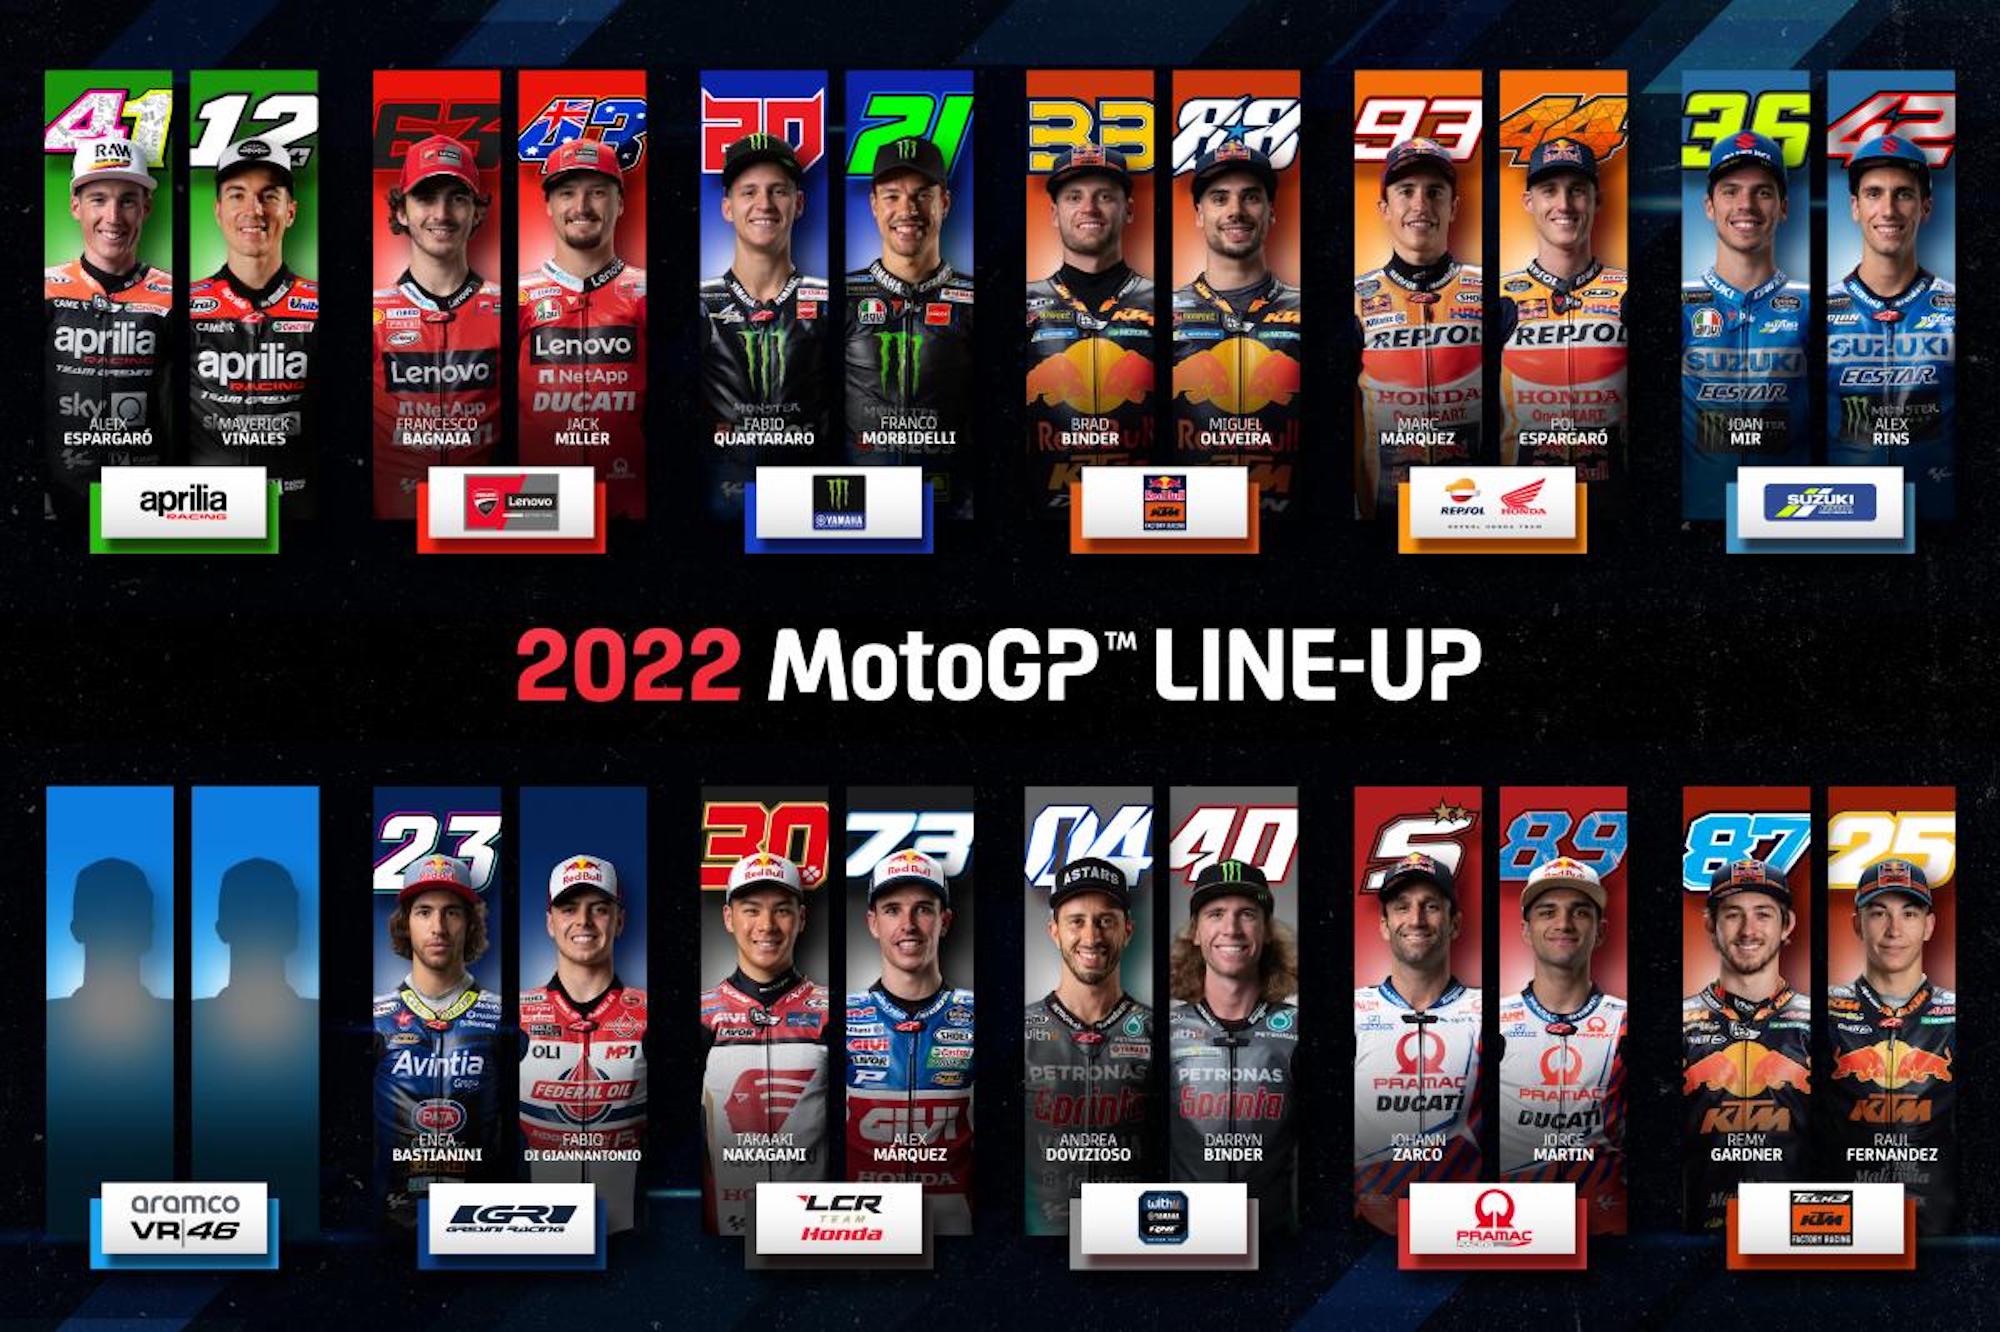 MotoGP's lineup of riders. Media sourced from MotoGP.